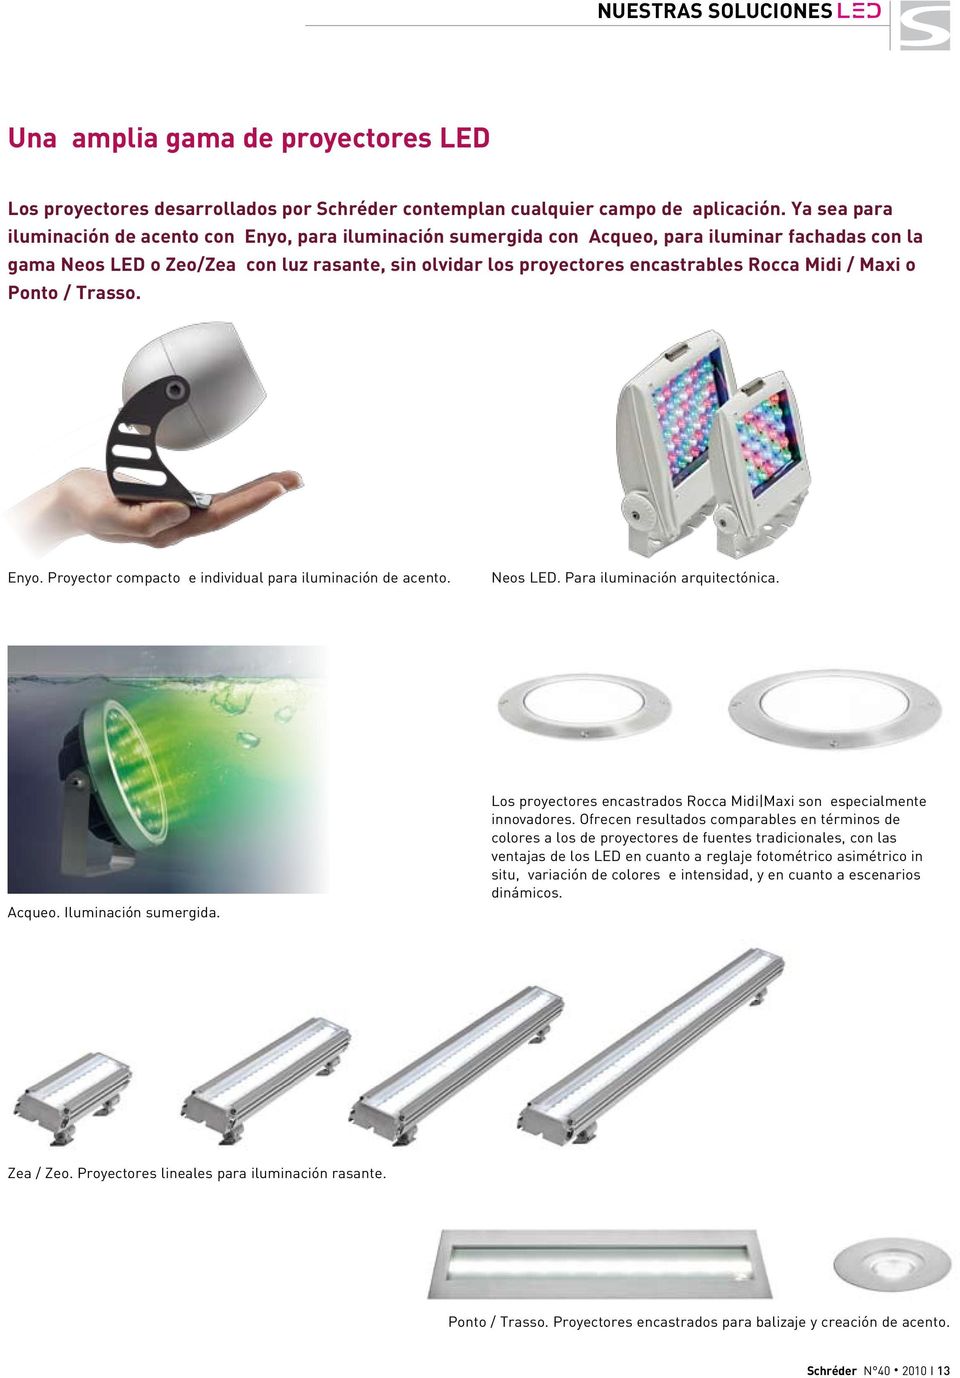 Rocca Midi / Maxi o Ponto / Trasso. Enyo. Proyector compacto e individual para iluminación de acento. Neos LED. Para iluminación arquitectónica. Acqueo. Iluminación sumergida.